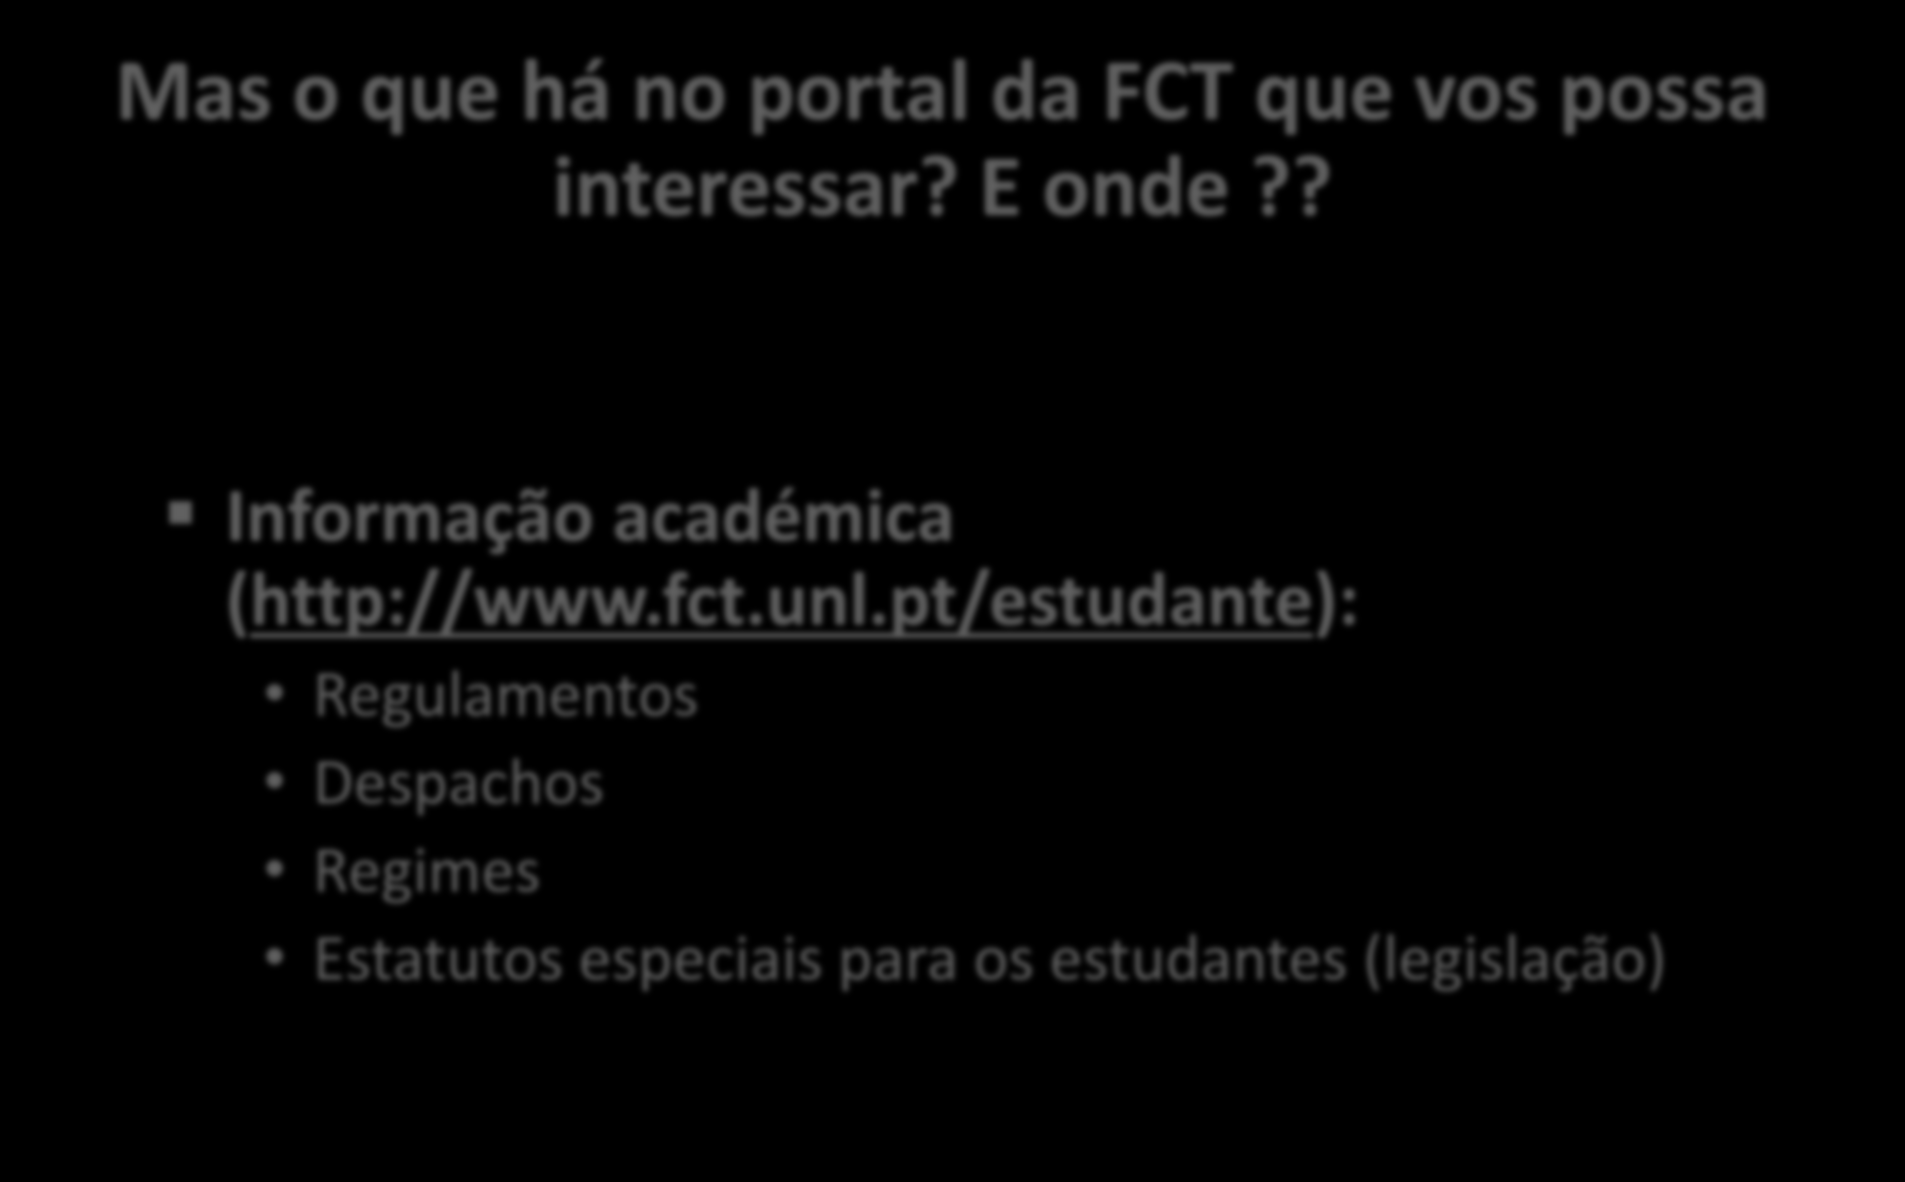 Mas o que há no portal da FCT que vos possa interessar? E onde?? Informação académica (http://www.fct.unl.